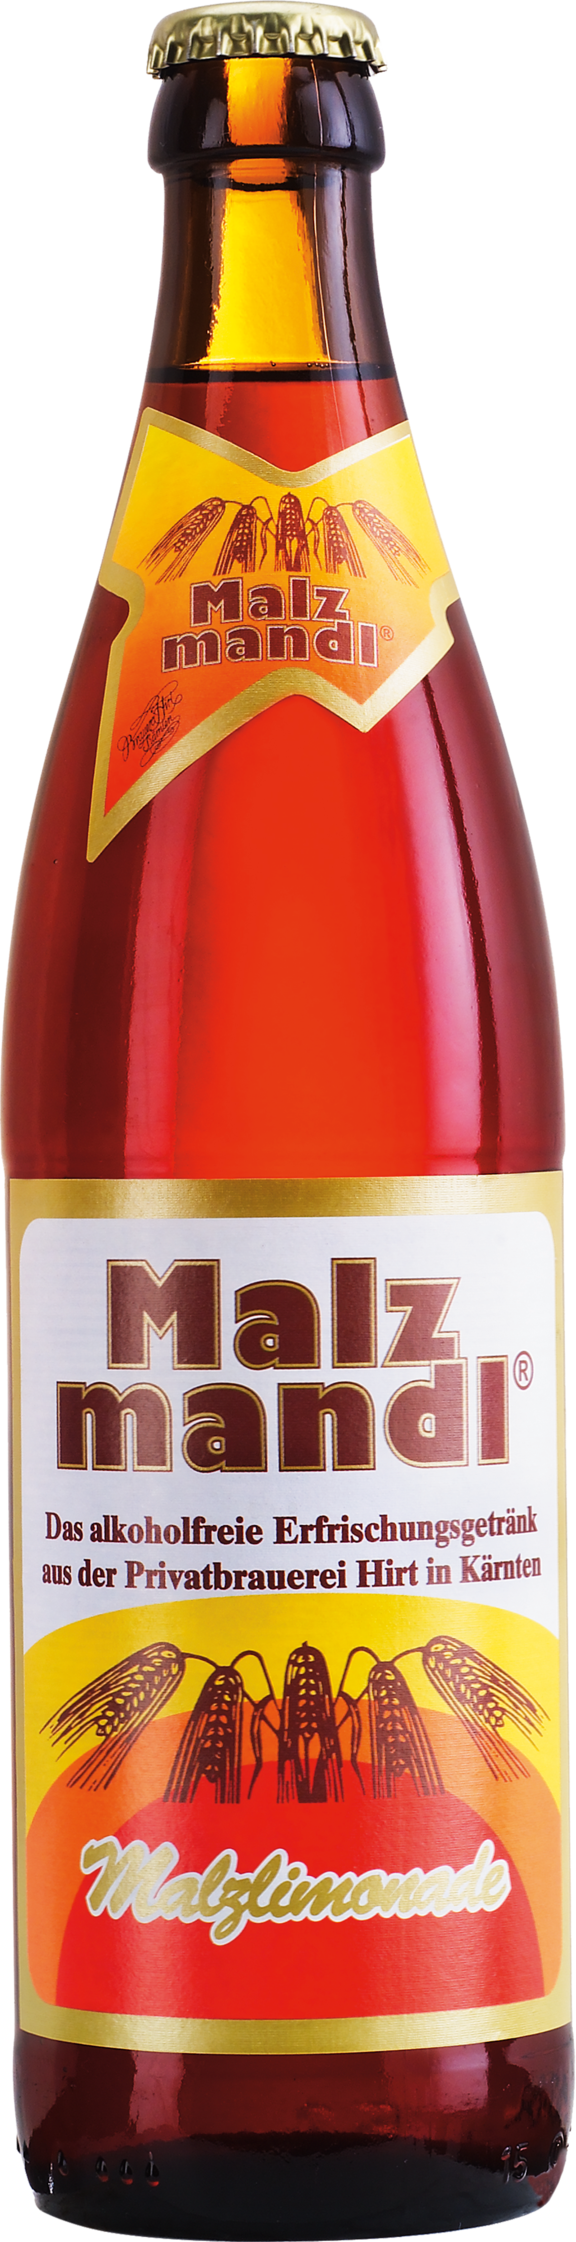 Hirter Malzmandl Flasche05